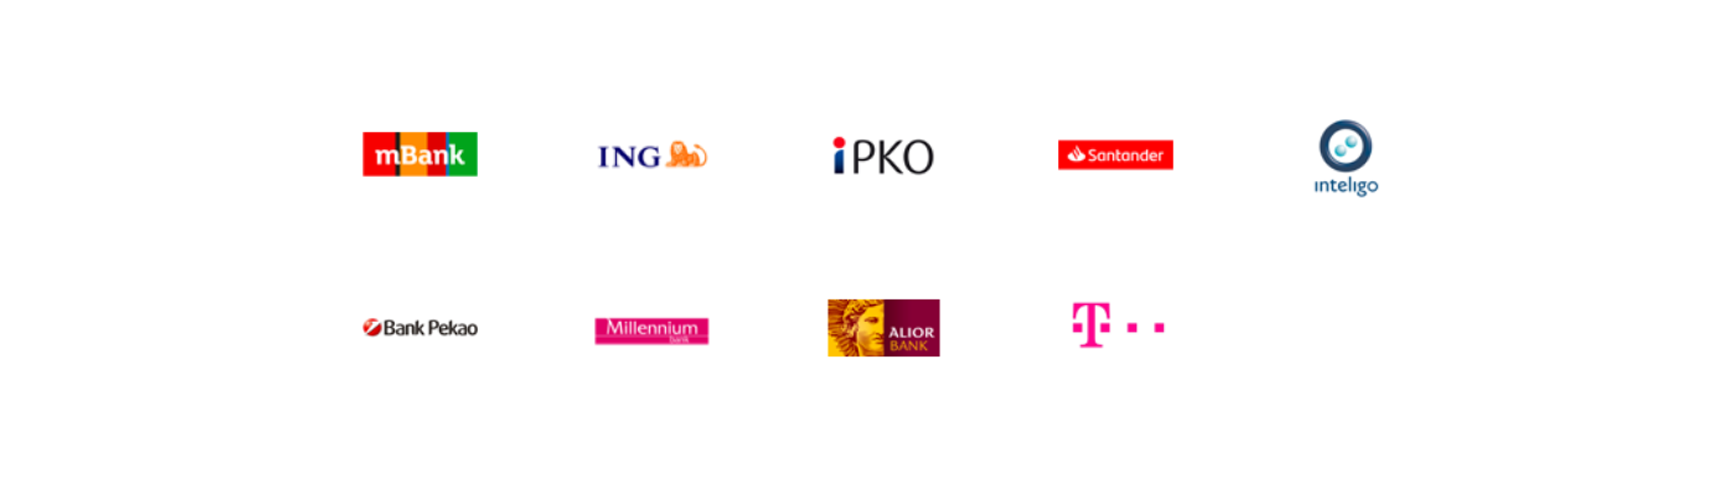 logotypy banków umożliwiających potwierdzenie profilu zaufanego